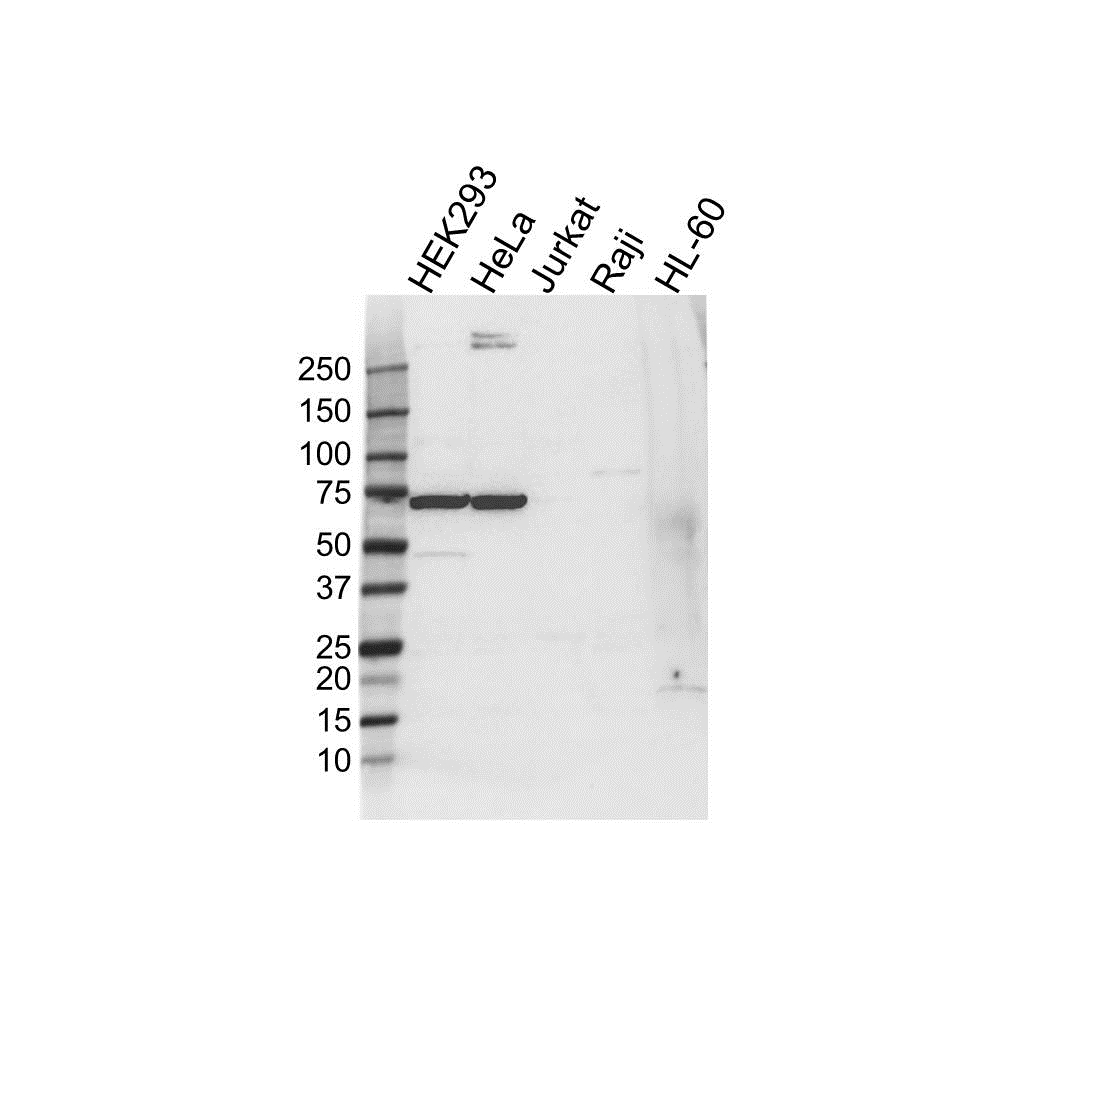 Anti HSPA6 Antibody (PrecisionAb Polyclonal Antibody) gallery image 1